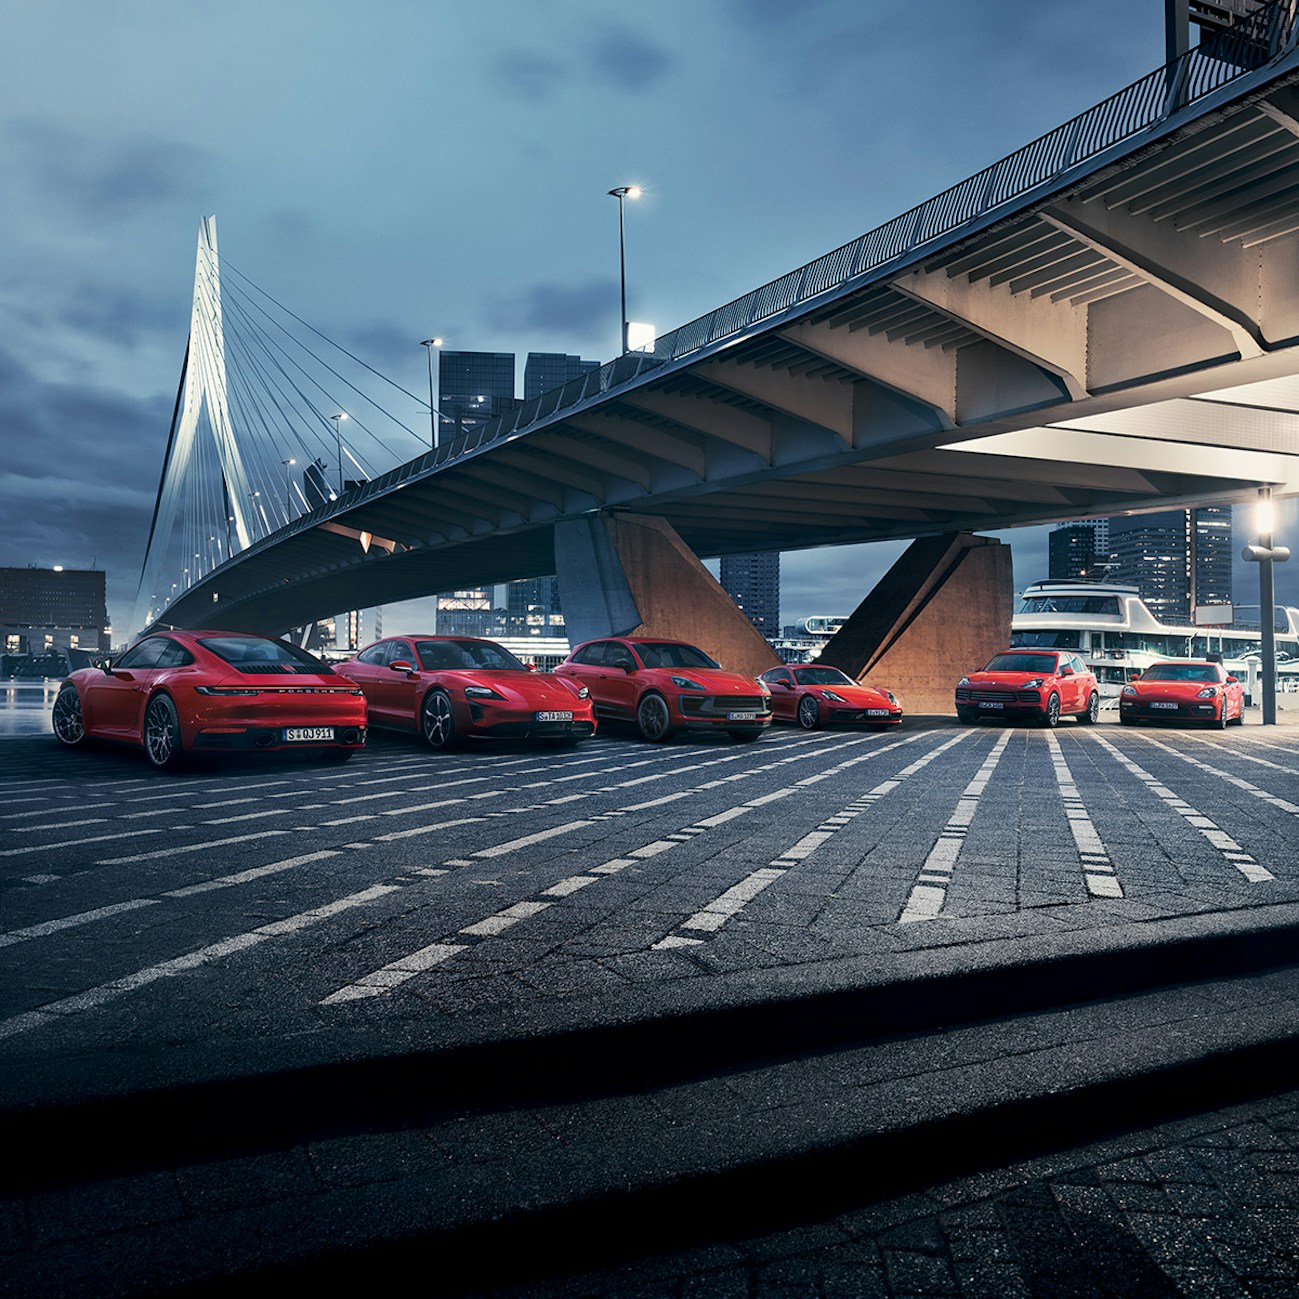 Mehrere Porsche-Autos auf der Straße, vor einer Brücke